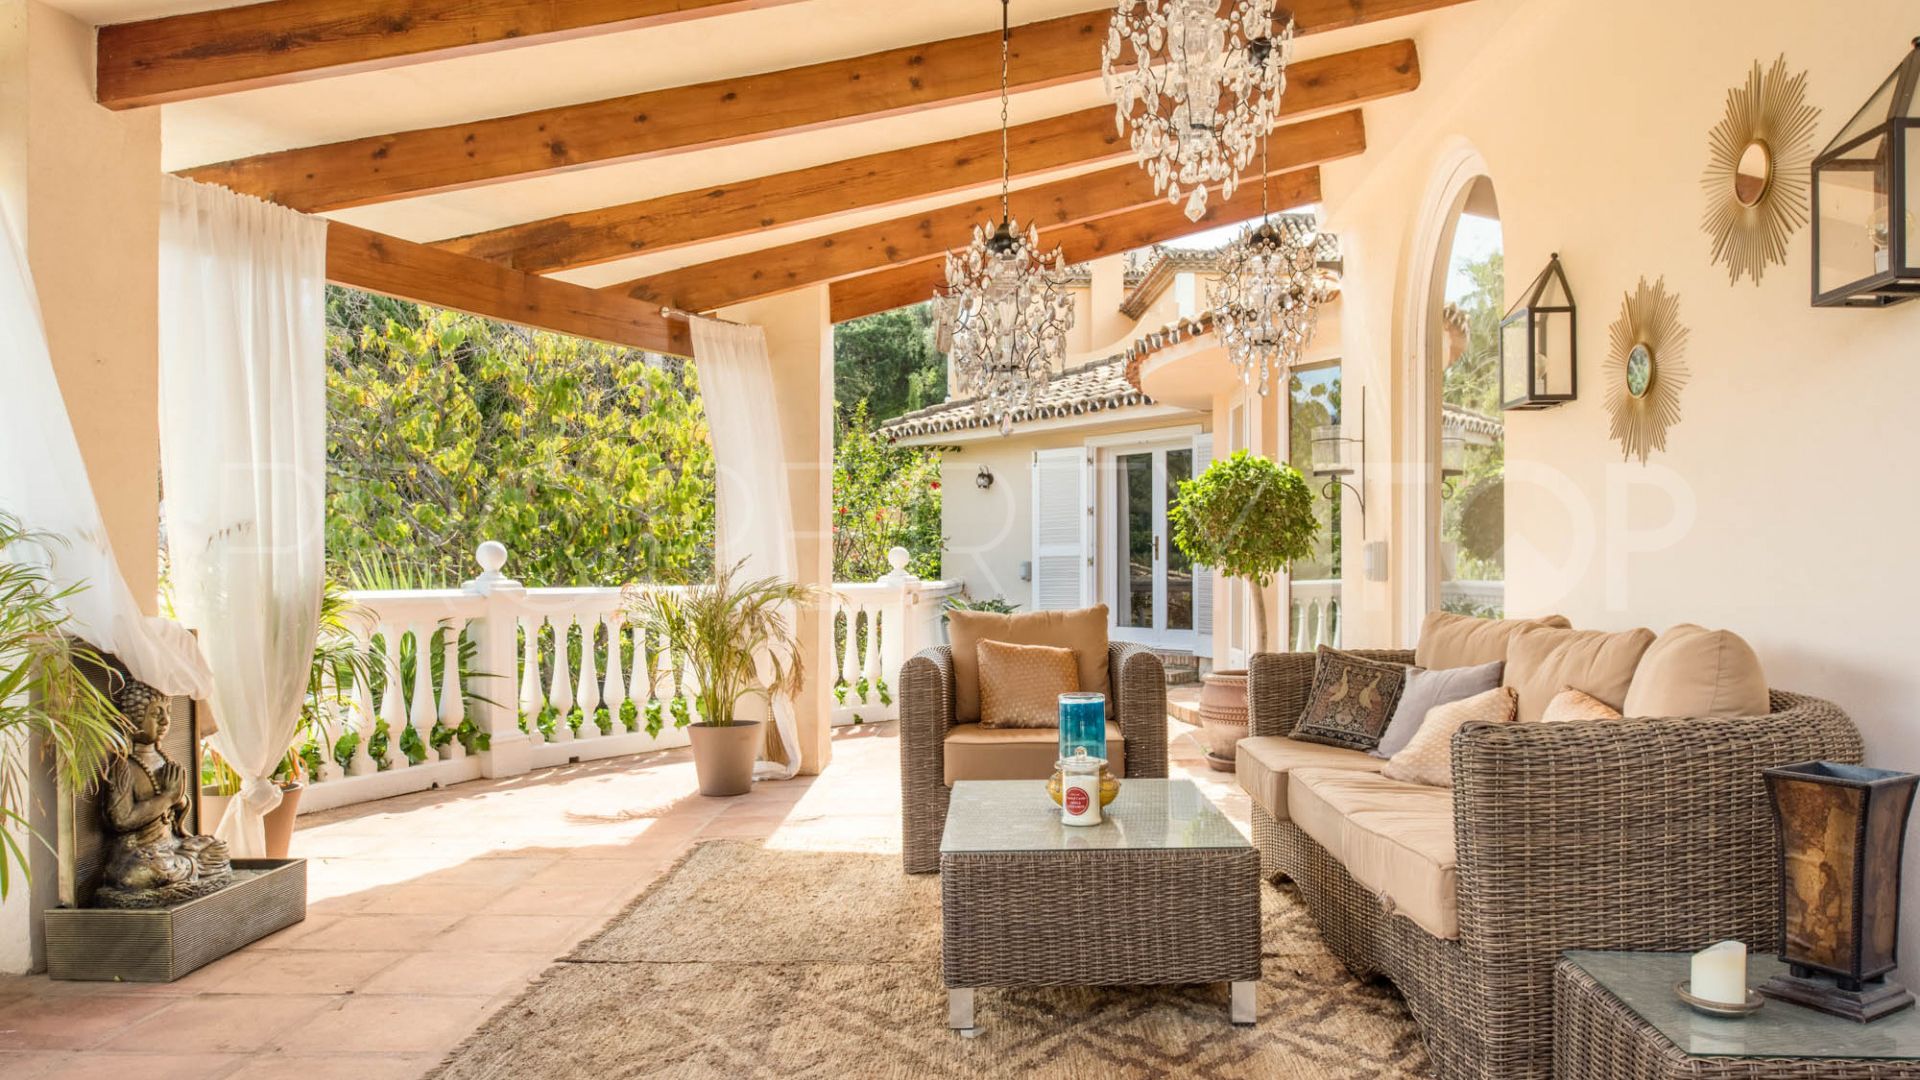 For sale villa in Los Almendros with 4 bedrooms